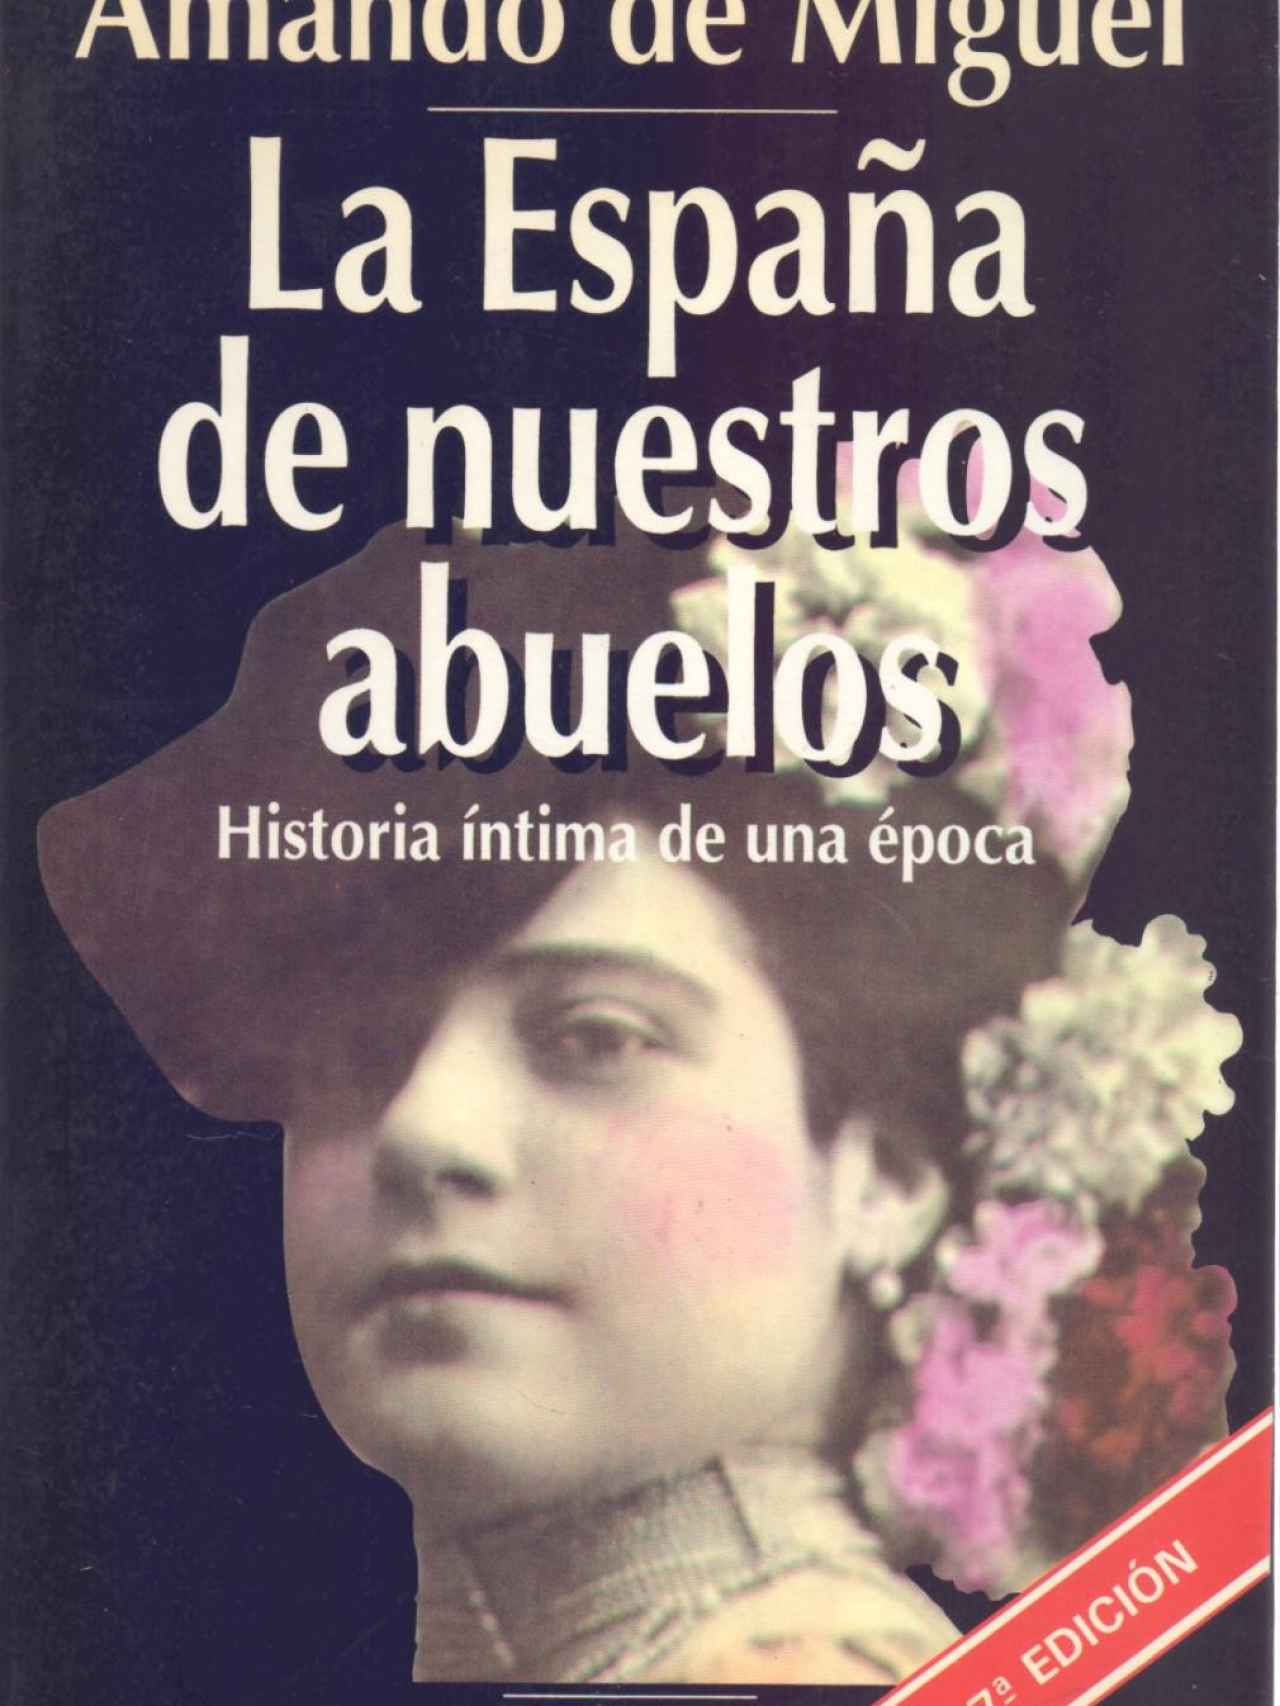 'La España de nuestros abuelos'